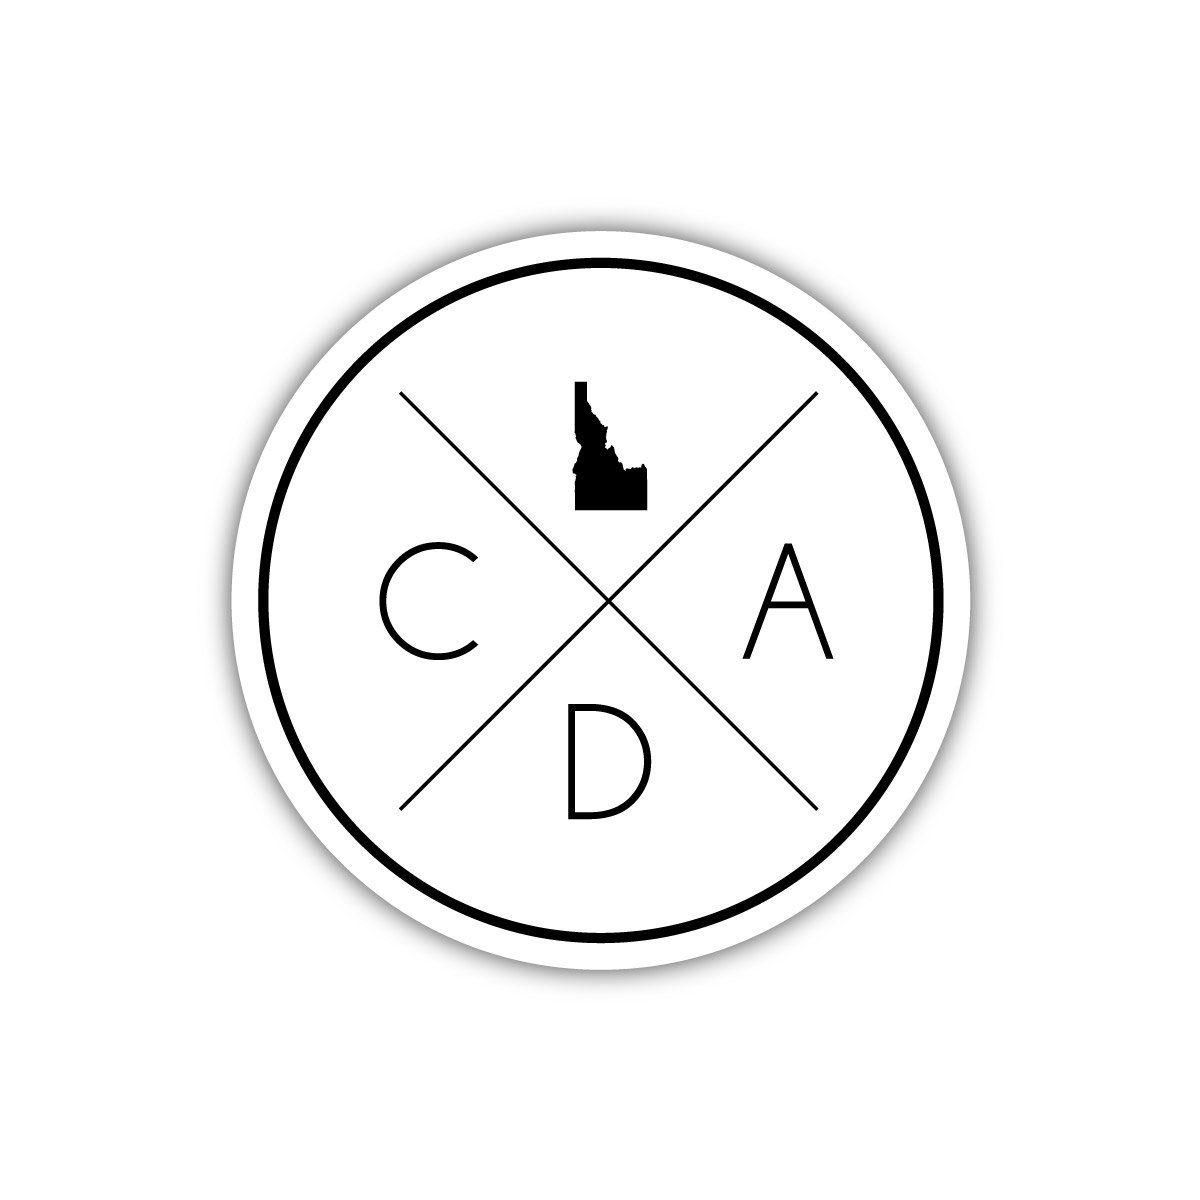 CDA Logo - CDA Logo Sticker